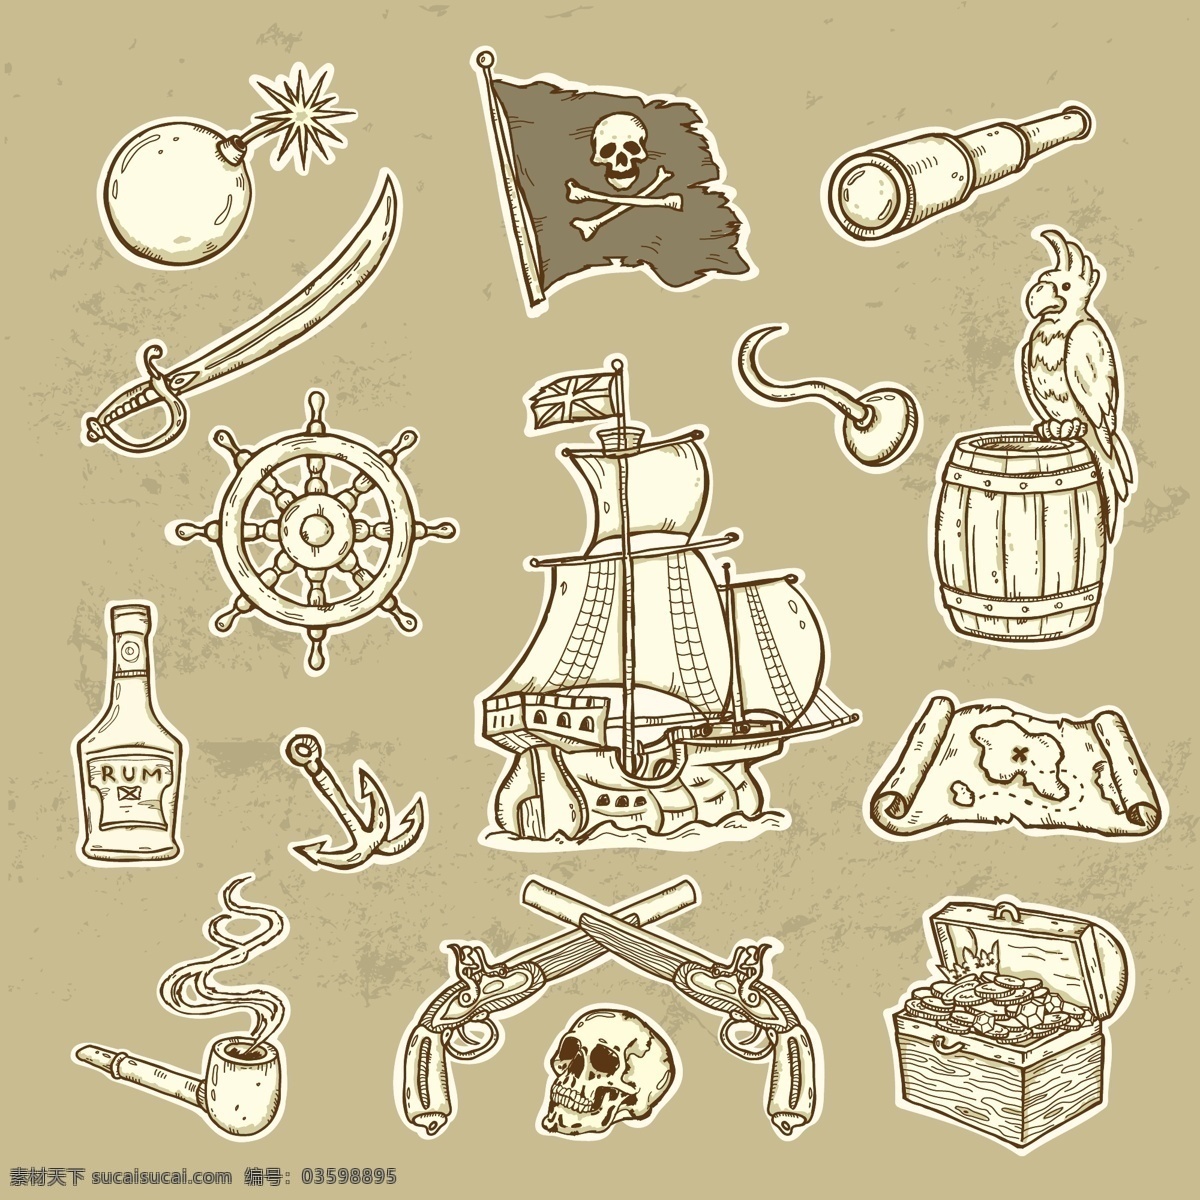 海盗 涂鸦 风格 矢量 矢量素材 设计素材 背景素材